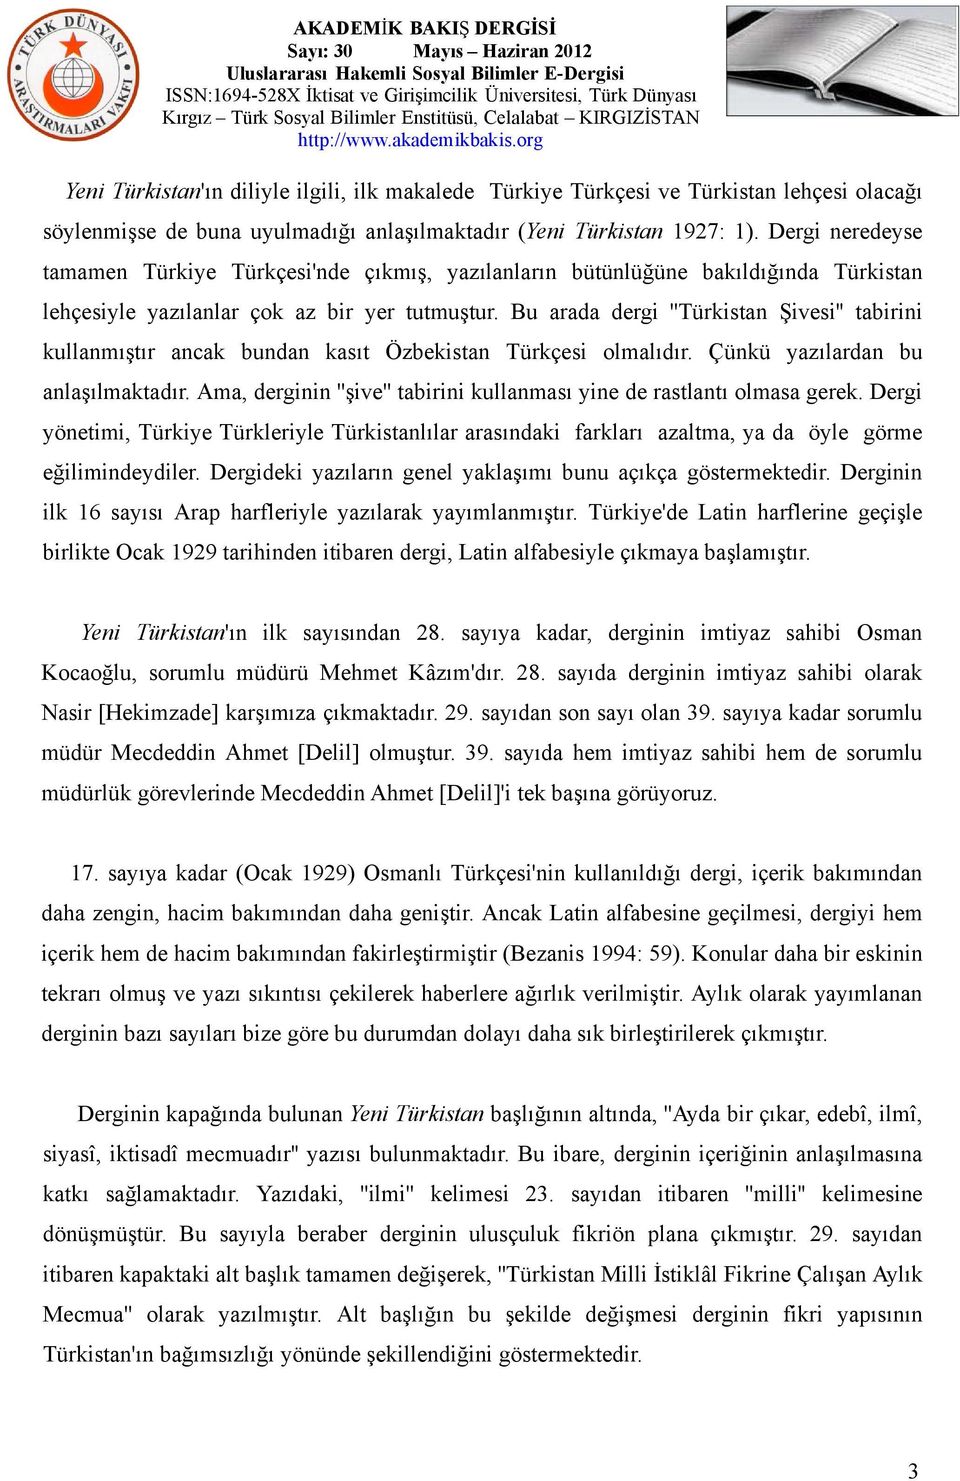 Bu arada dergi ''Türkistan Şivesi'' tabirini kullanmıştır ancak bundan kasıt Özbekistan Türkçesi olmalıdır. Çünkü yazılardan bu anlaşılmaktadır.